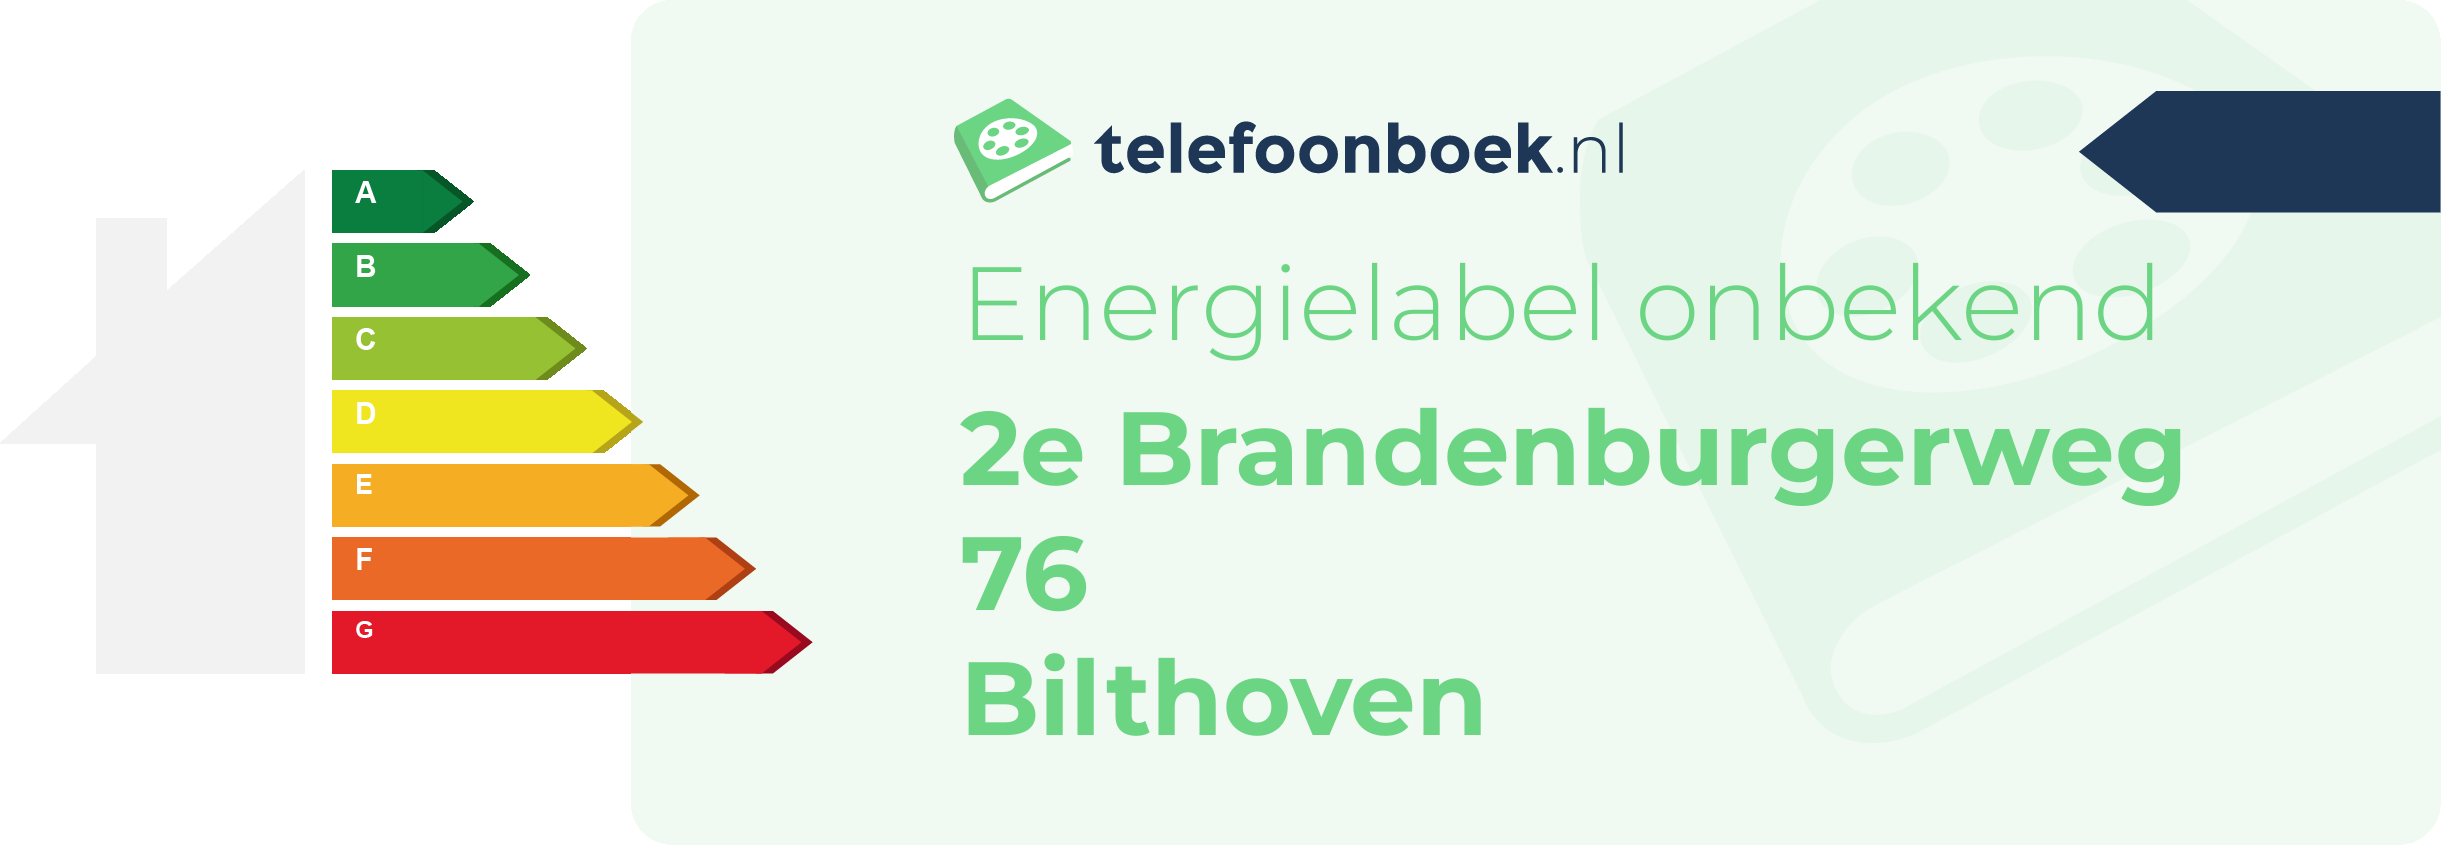 Energielabel 2e Brandenburgerweg 76 Bilthoven